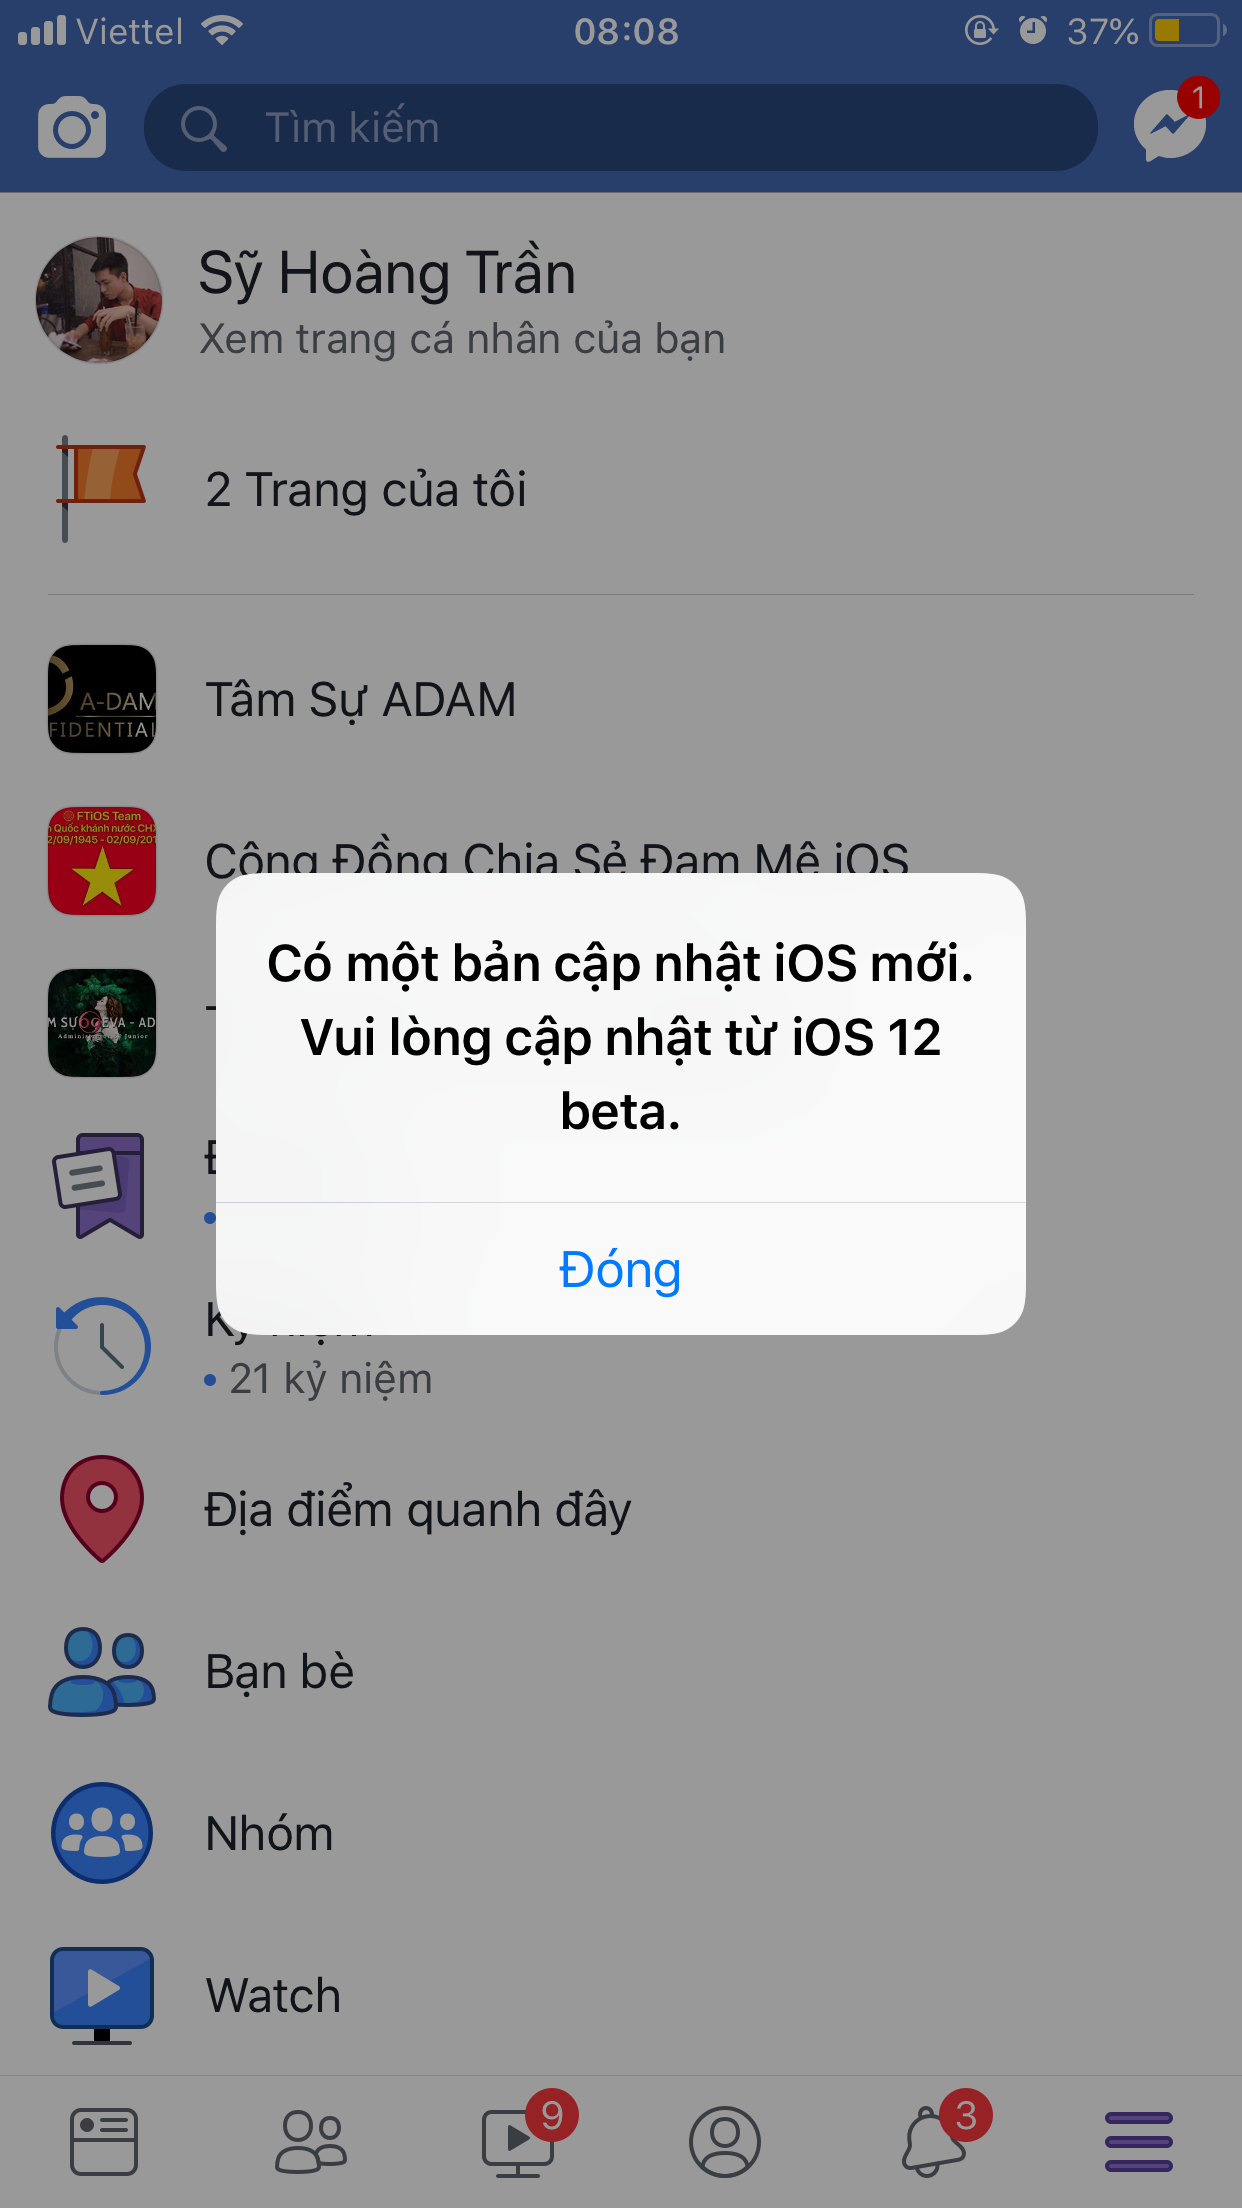 iOS 12 Beta 12, iOS 12 beta12 cho nhà phát triển, tin tức apple, tổng hợp cập nhật firmware ios, iOS 12 tính năng mới, cập nhật iOS 12 mới nhất, tin tức công nghệ tháng 9 2018, apple ra mắt iphone 2018, iOS 12 beta 12 những tính năng mới, có nên lên iOS 12 beta 12, cách lên iOS 12